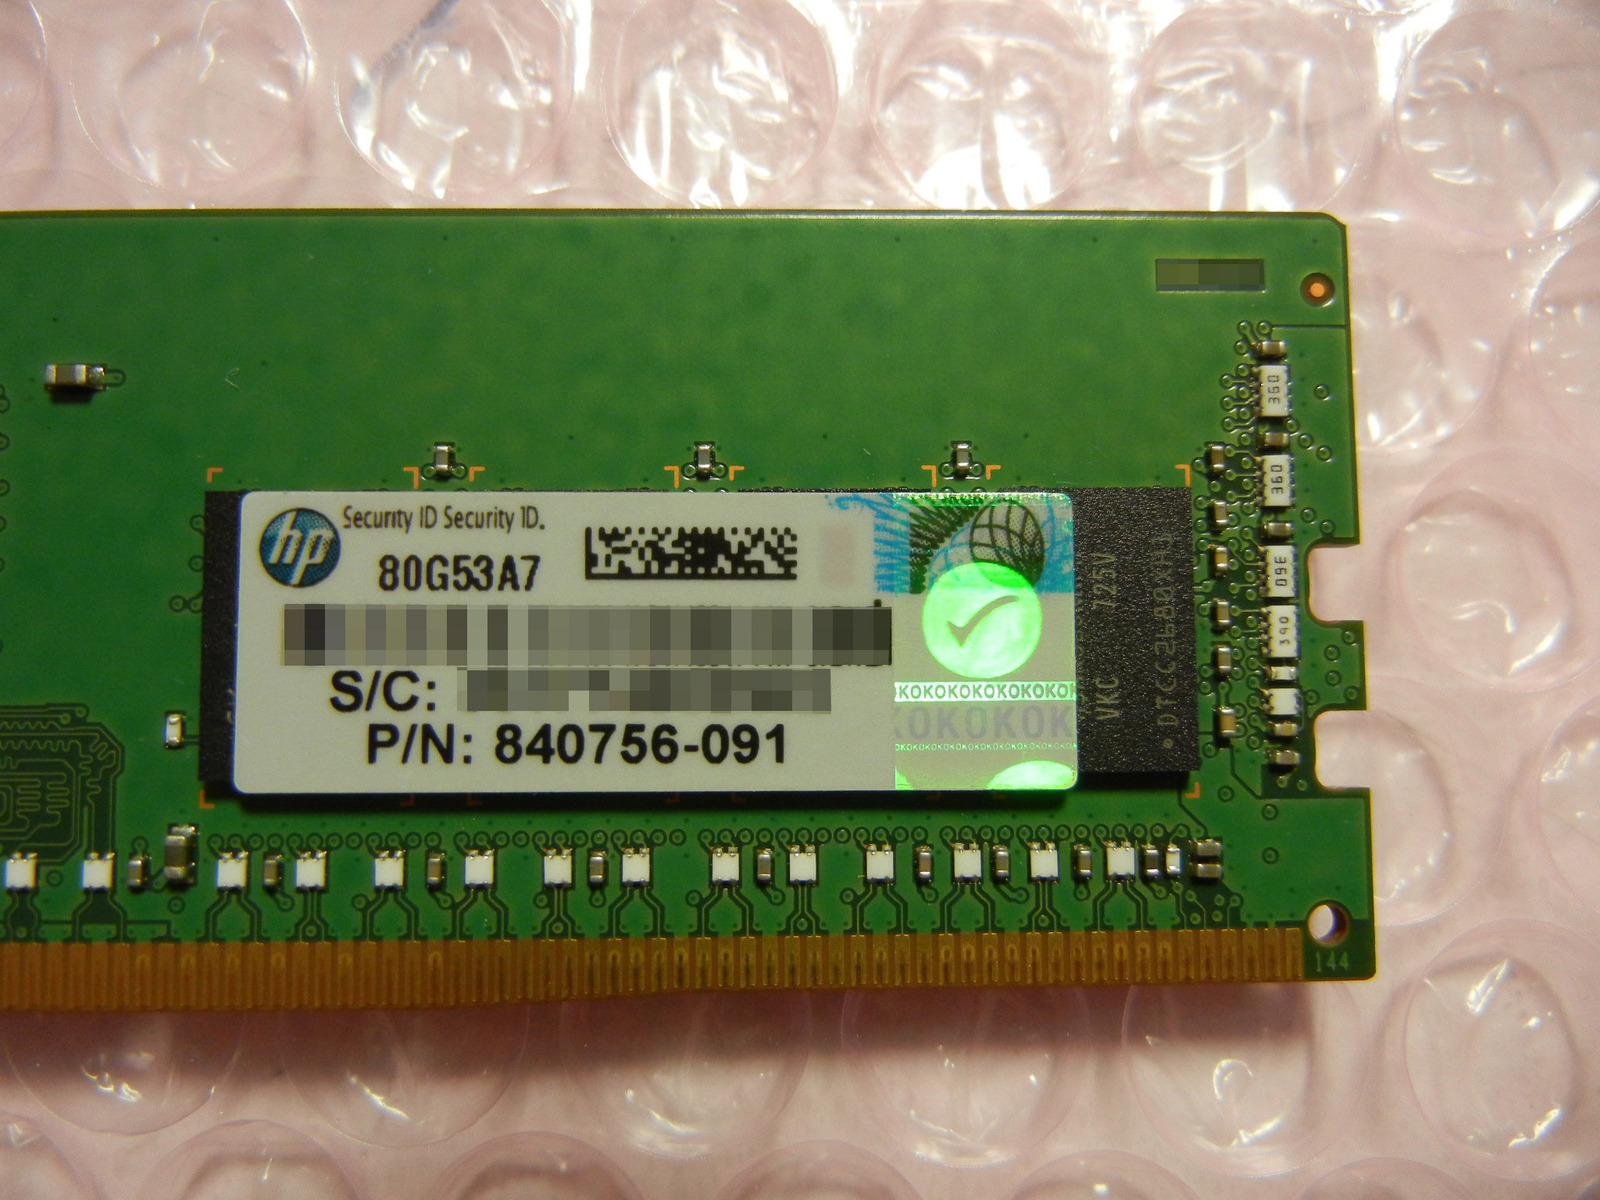 最初の 全商品オープニング価格 HP Proliant Gen10 サーバー用メモリ 835955-B21 P N:840756-091 2Rx8 PC4-2666V-R 16GB sawmillstationdoodles.com sawmillstationdoodles.com